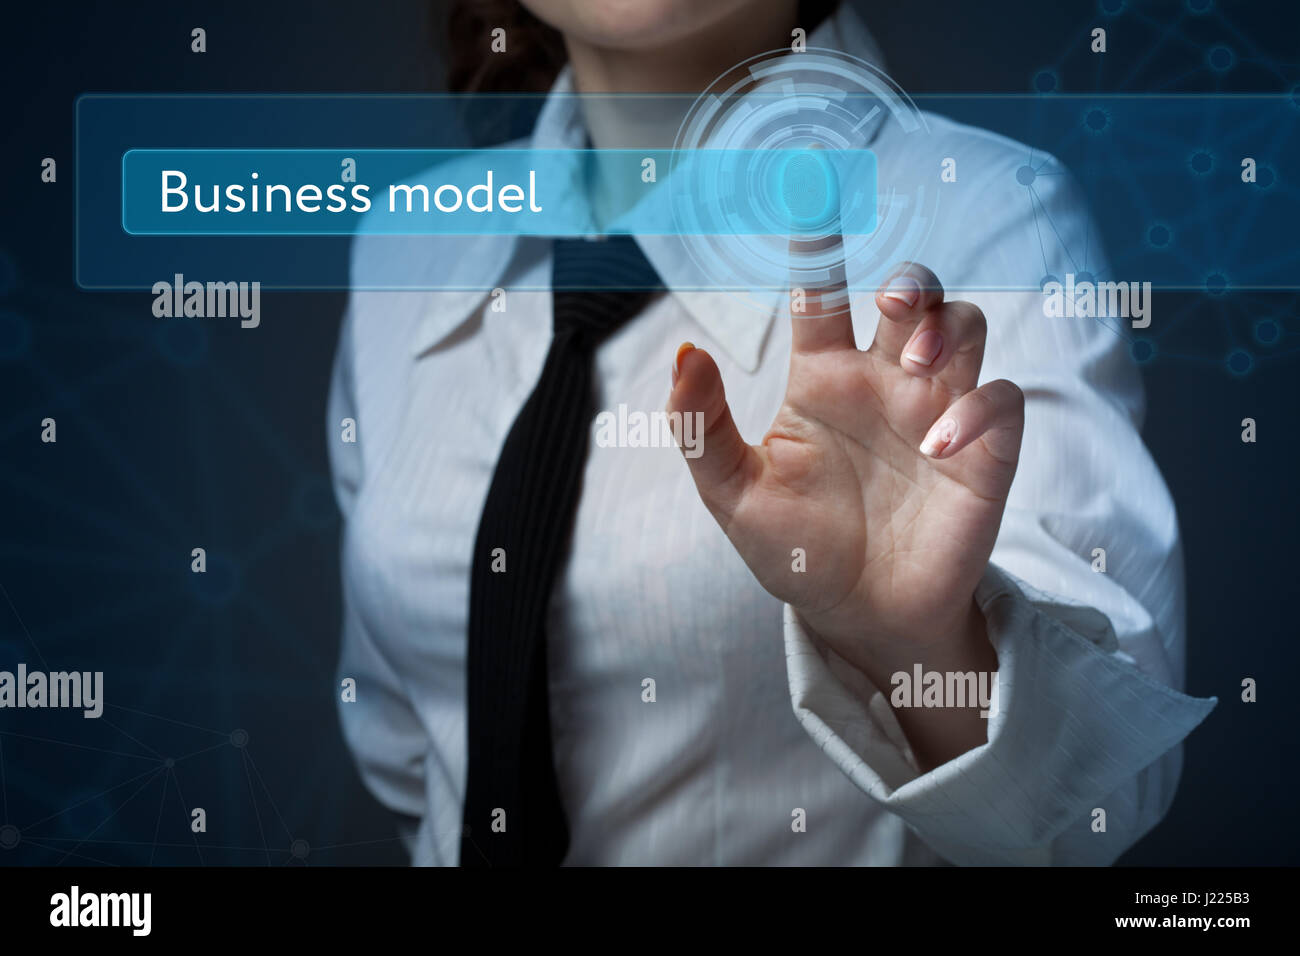 Le commerce, la technologie, internet et réseau concept. Femme d'affaires appuie sur un bouton sur l'écran virtuel : modèle d'affaires Banque D'Images